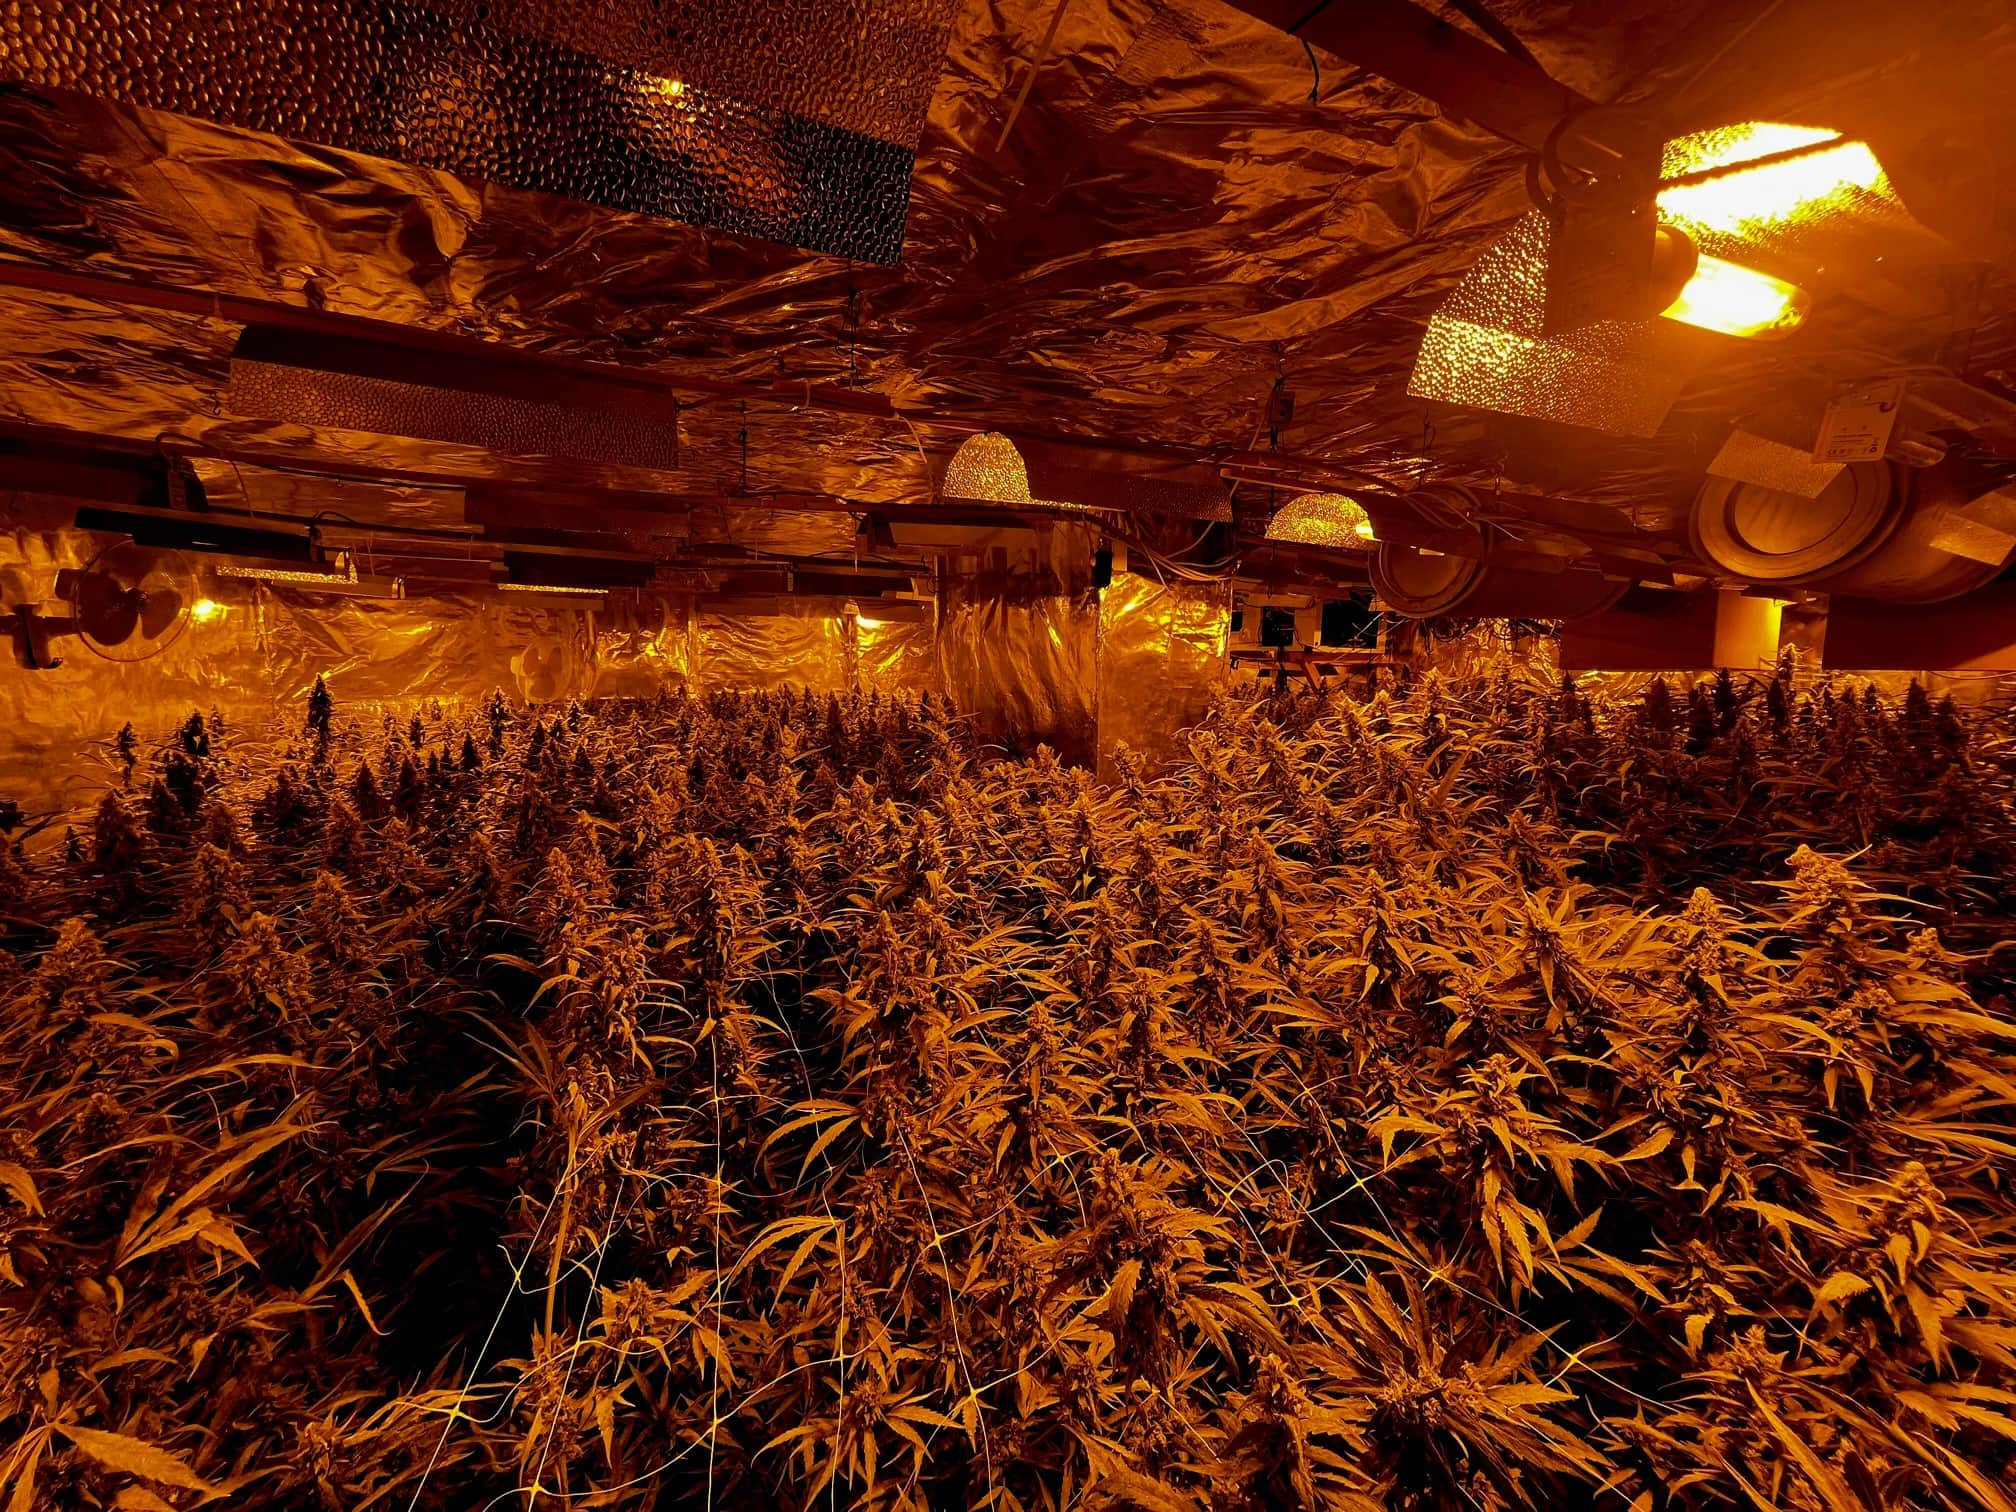 K-ln-Polizei-entdeckt-Cannabisplantage-in-Einfamilienhaus-ber-1000-Pflanzen-sichergestellt